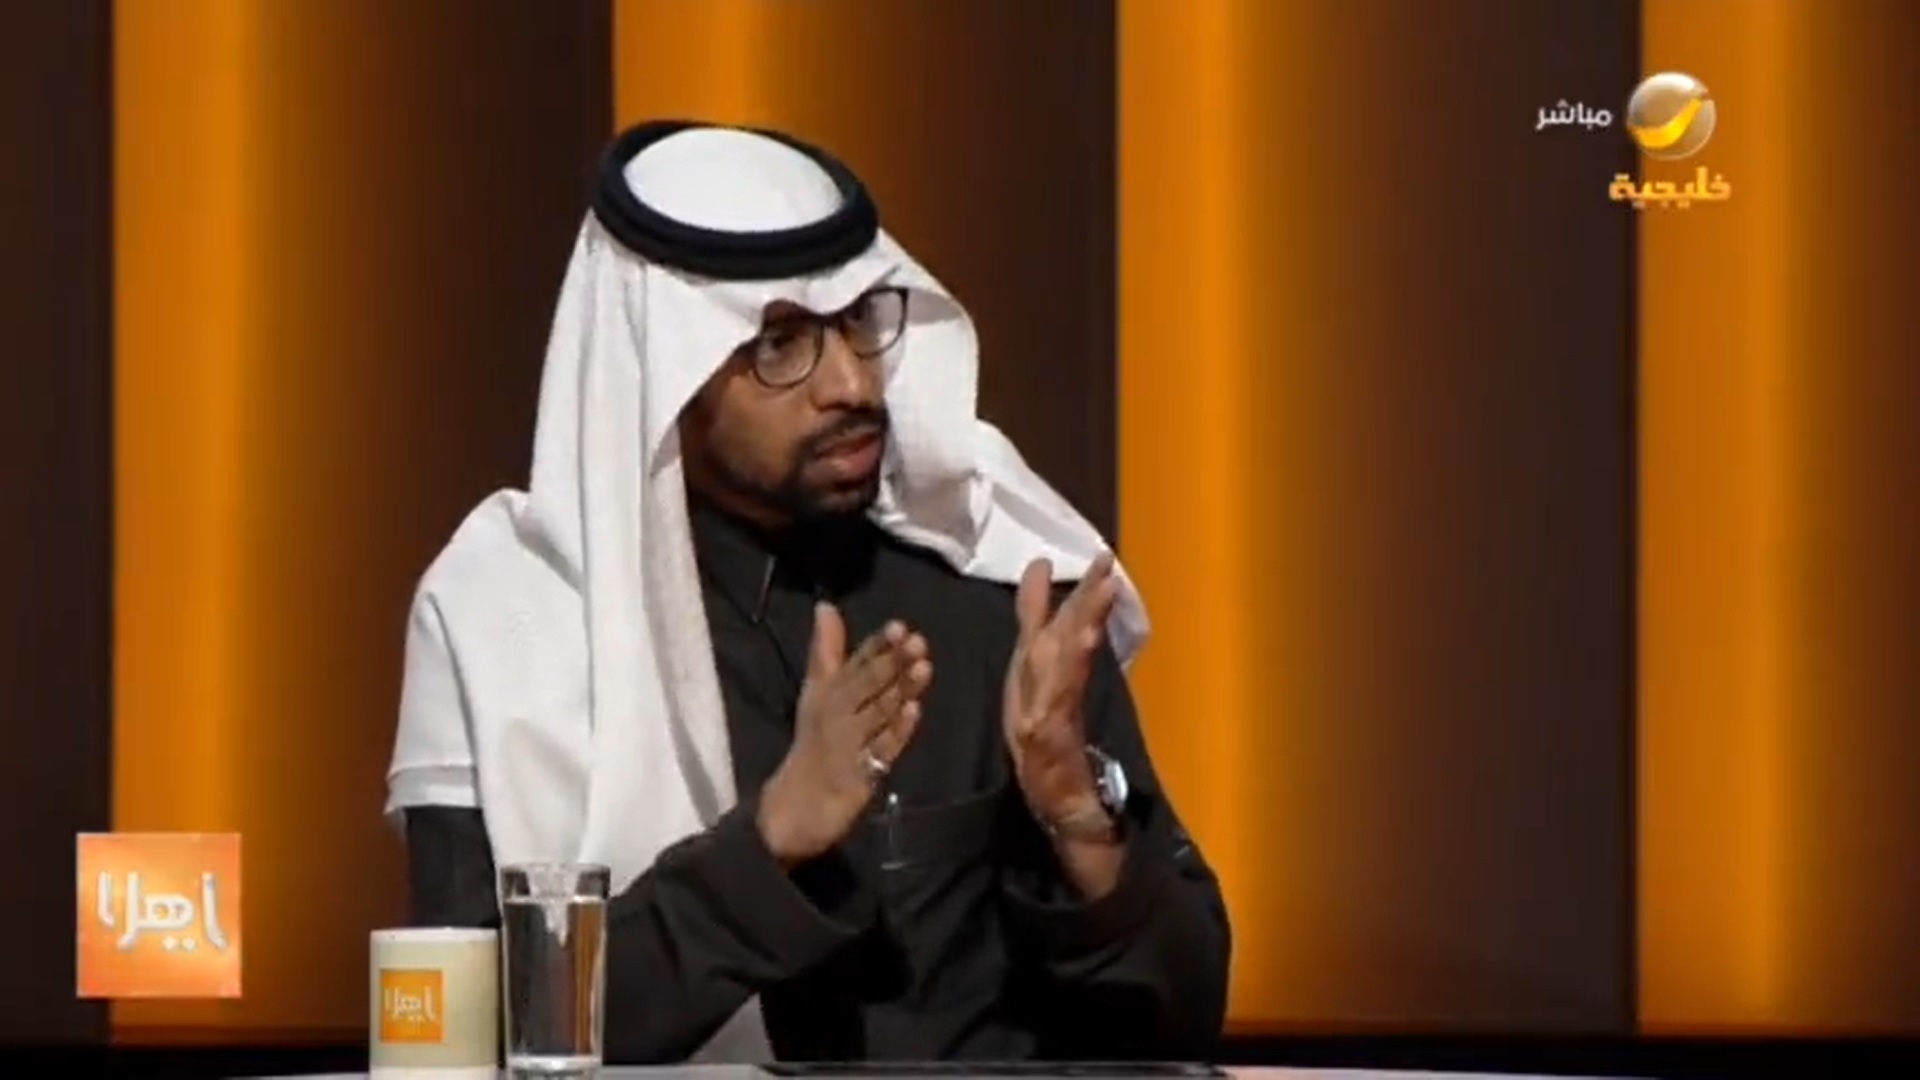 بالفيديو.. محامٍ سعودي يكشف عن التغييرات الجديدة بالحقوق والواجبات في العقد الموحد لتأجير السيارات